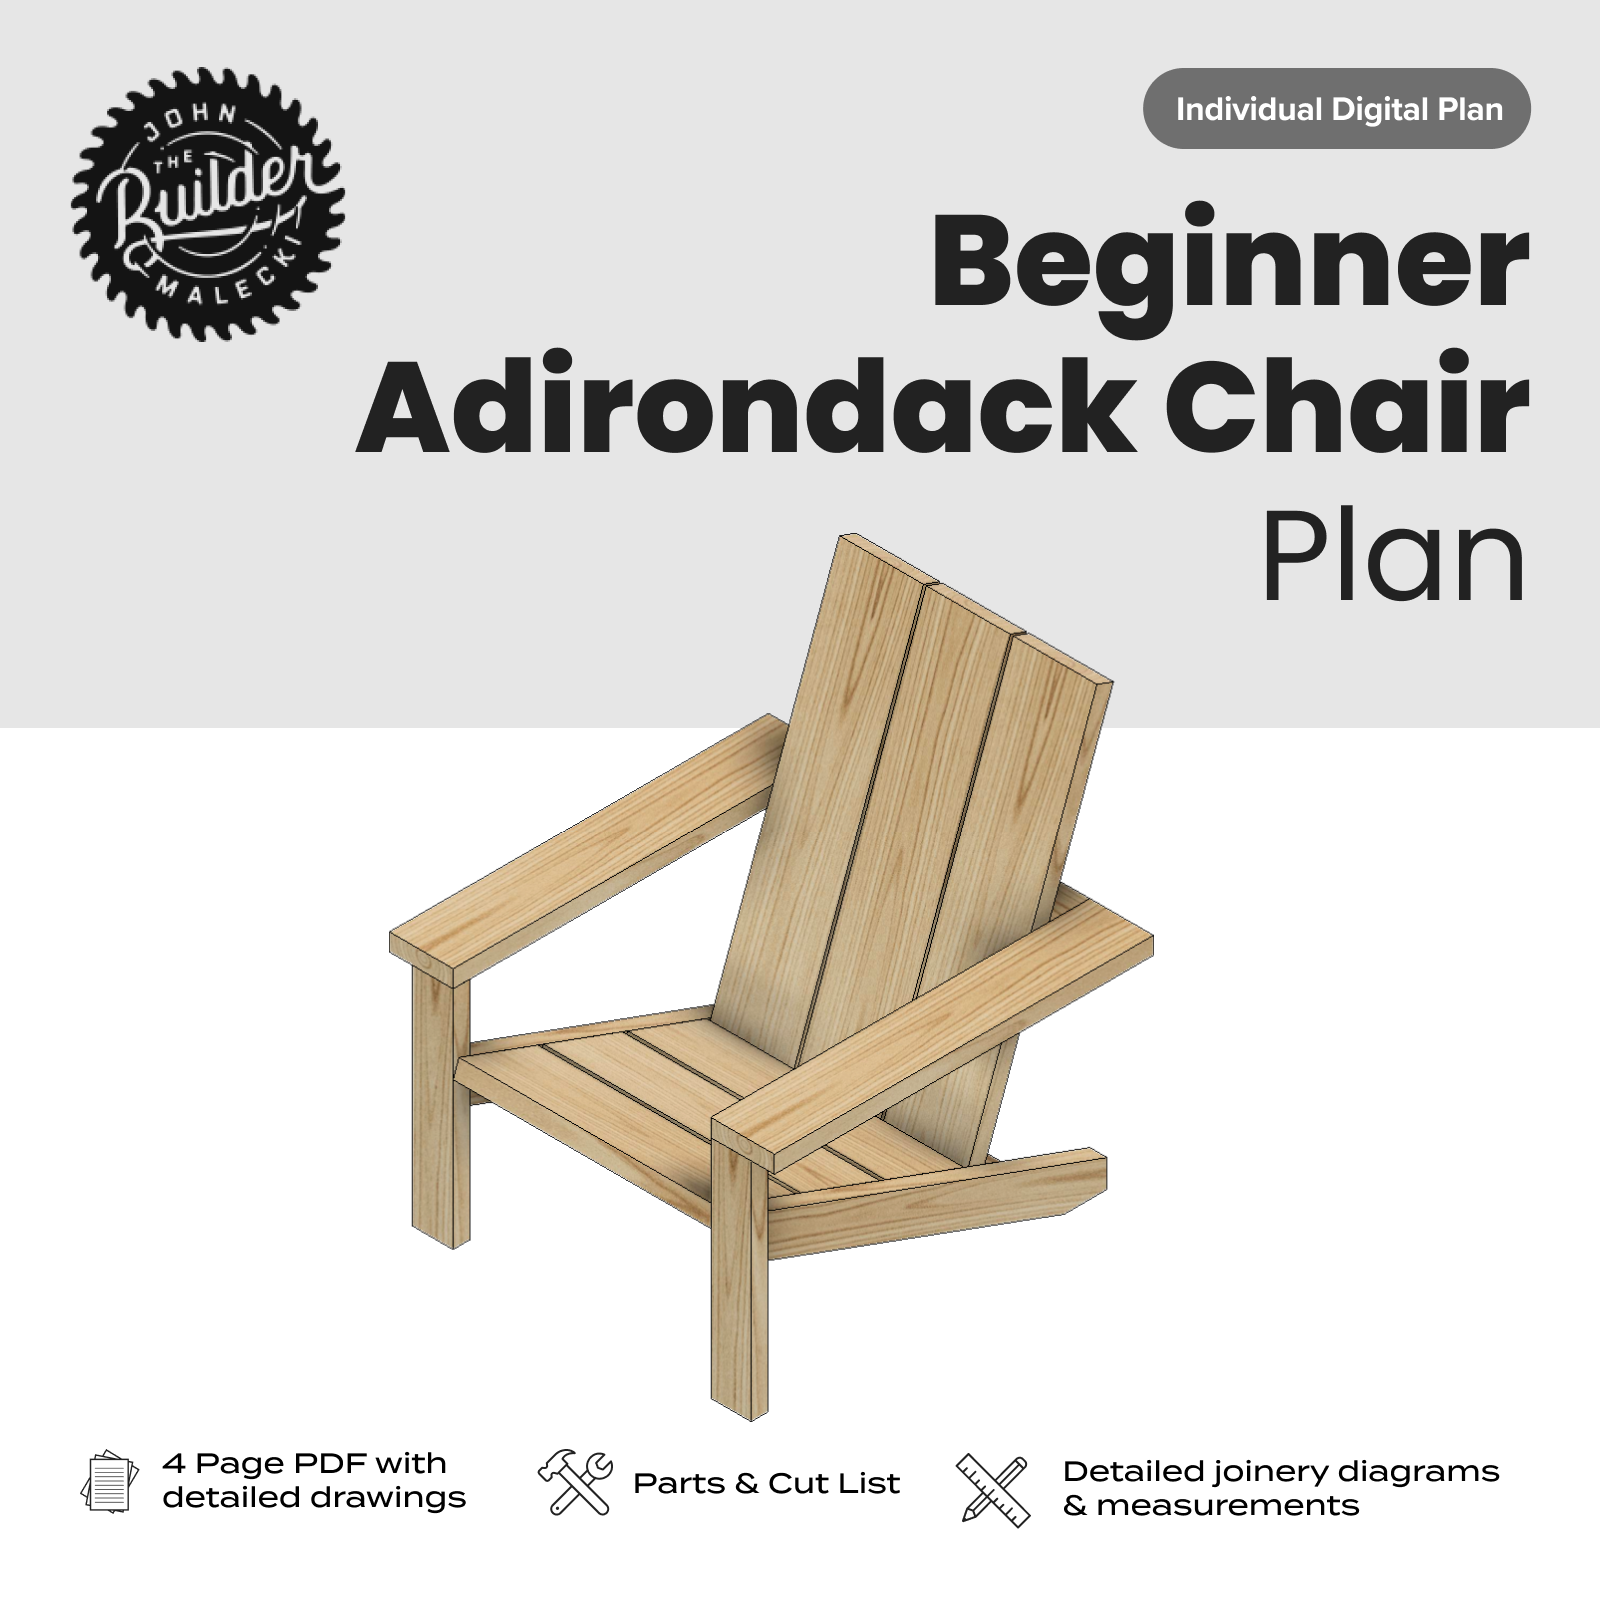 John Malecki - Beginner Adirondack Chair Plan